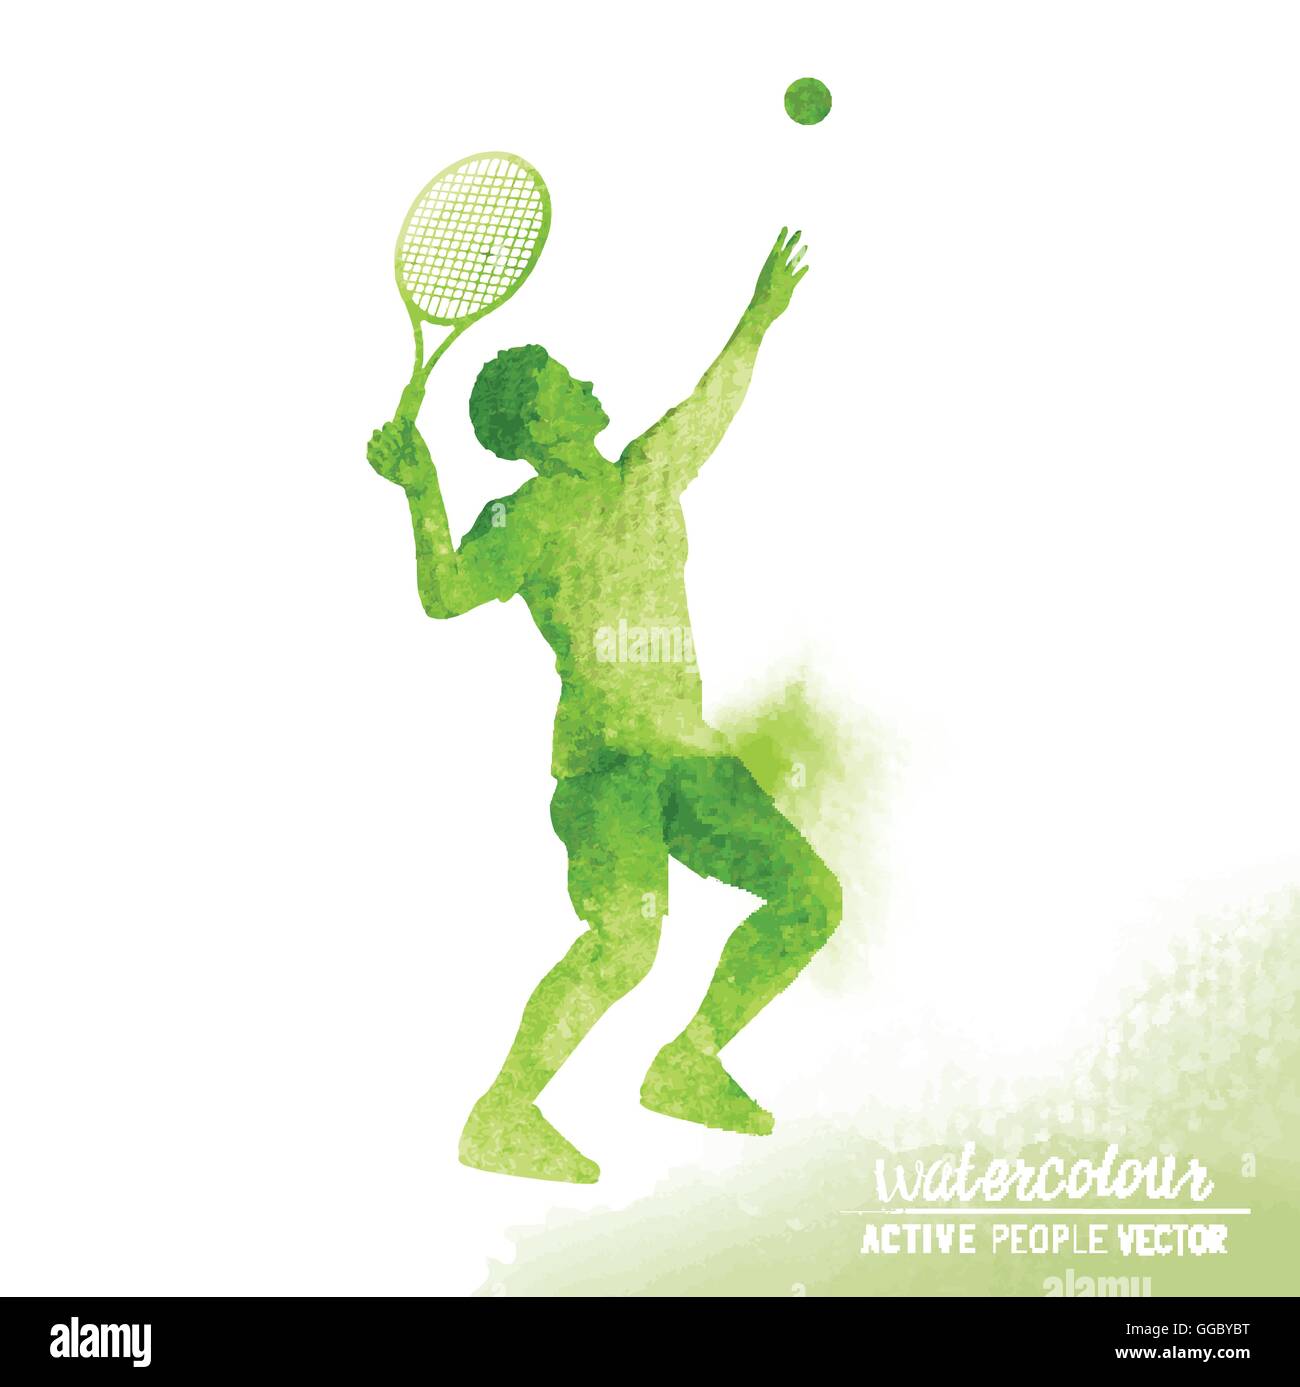 Joueur de tennis masculin actif sur le point de frapper une balle de tennis pour servir d'illustration vectorielle - Aquarelle. Illustration de Vecteur